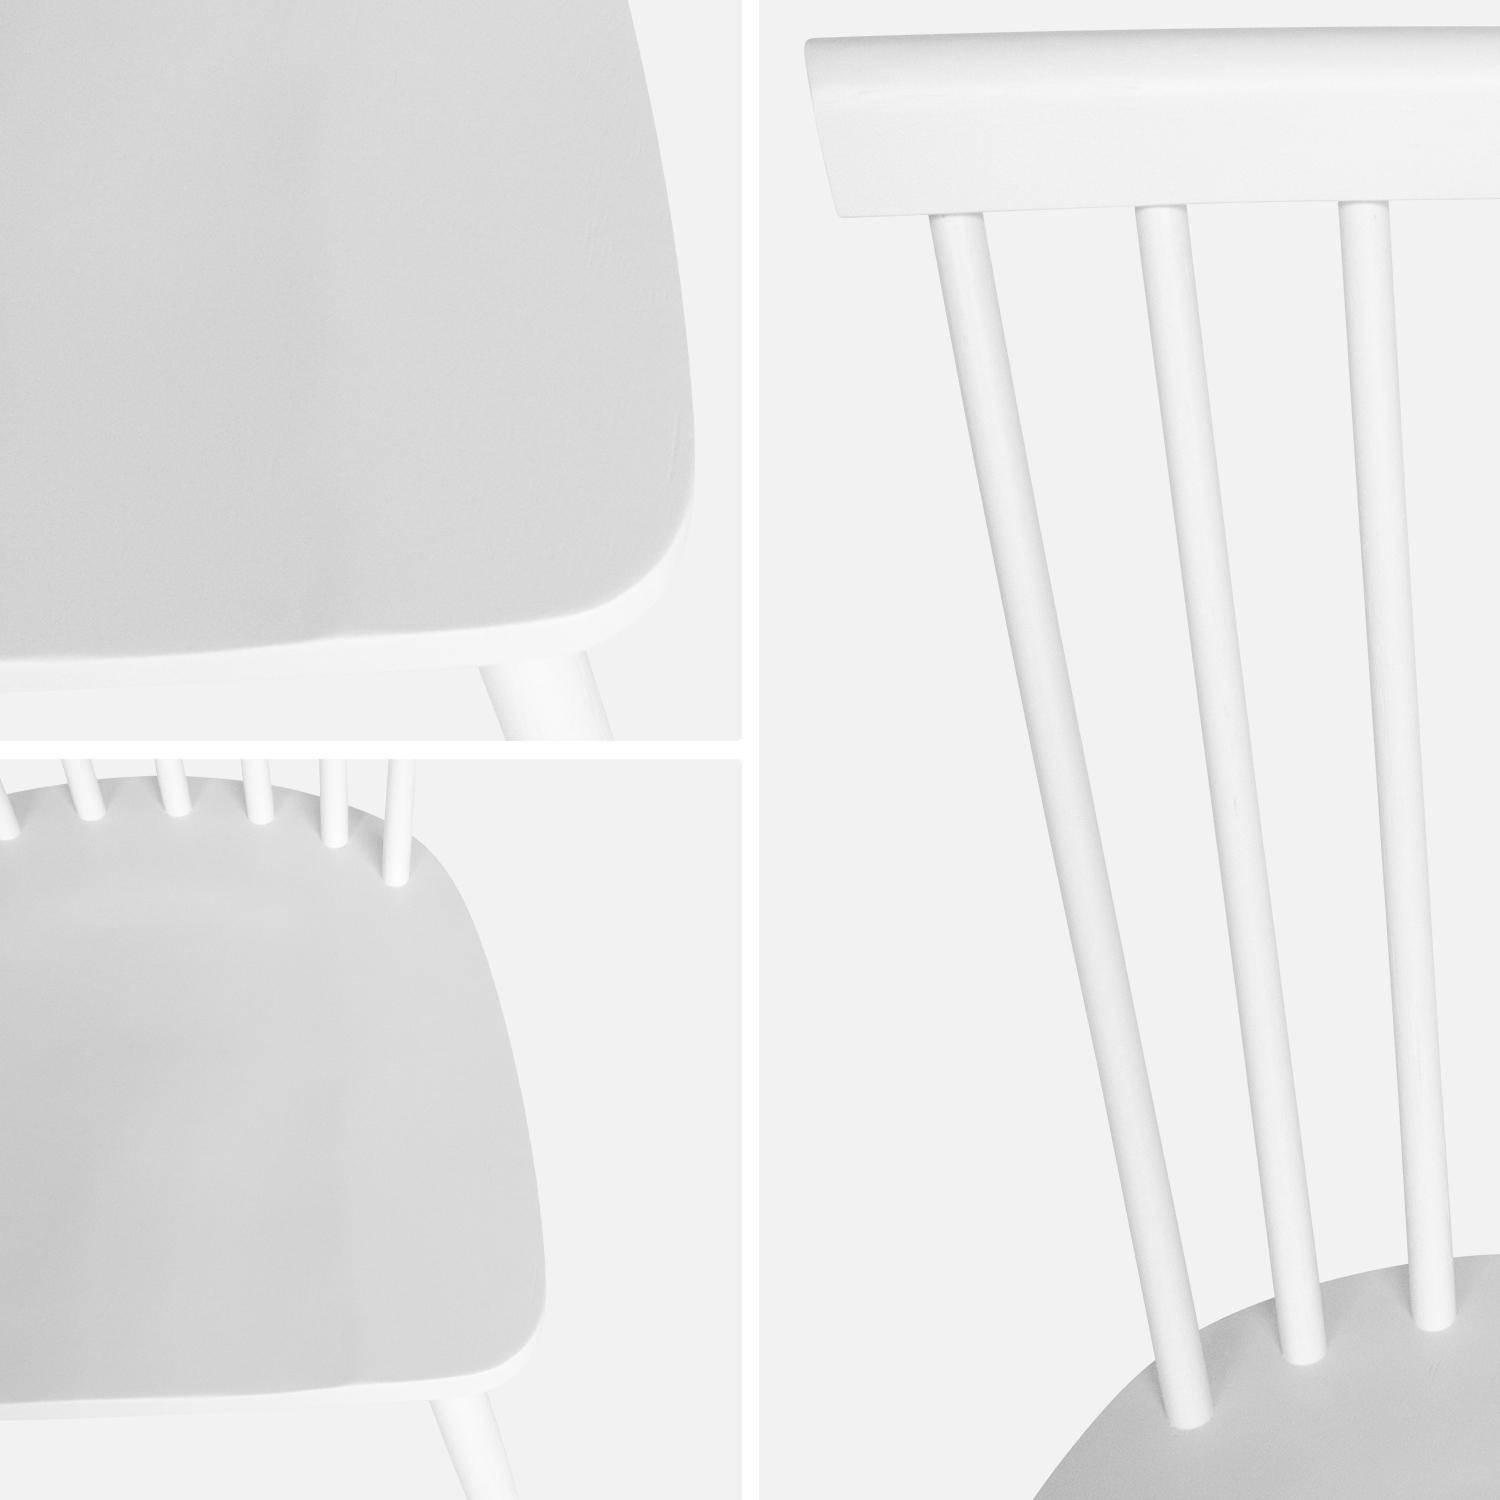 Lot de 2 chaises blanches à barreaux en bois d'hévéa, ROMIE, L 50,8 x P 44,2 x H 90cm. Livraison offerte, garantie 2 ans, meilleur prix garanti !  Photo6